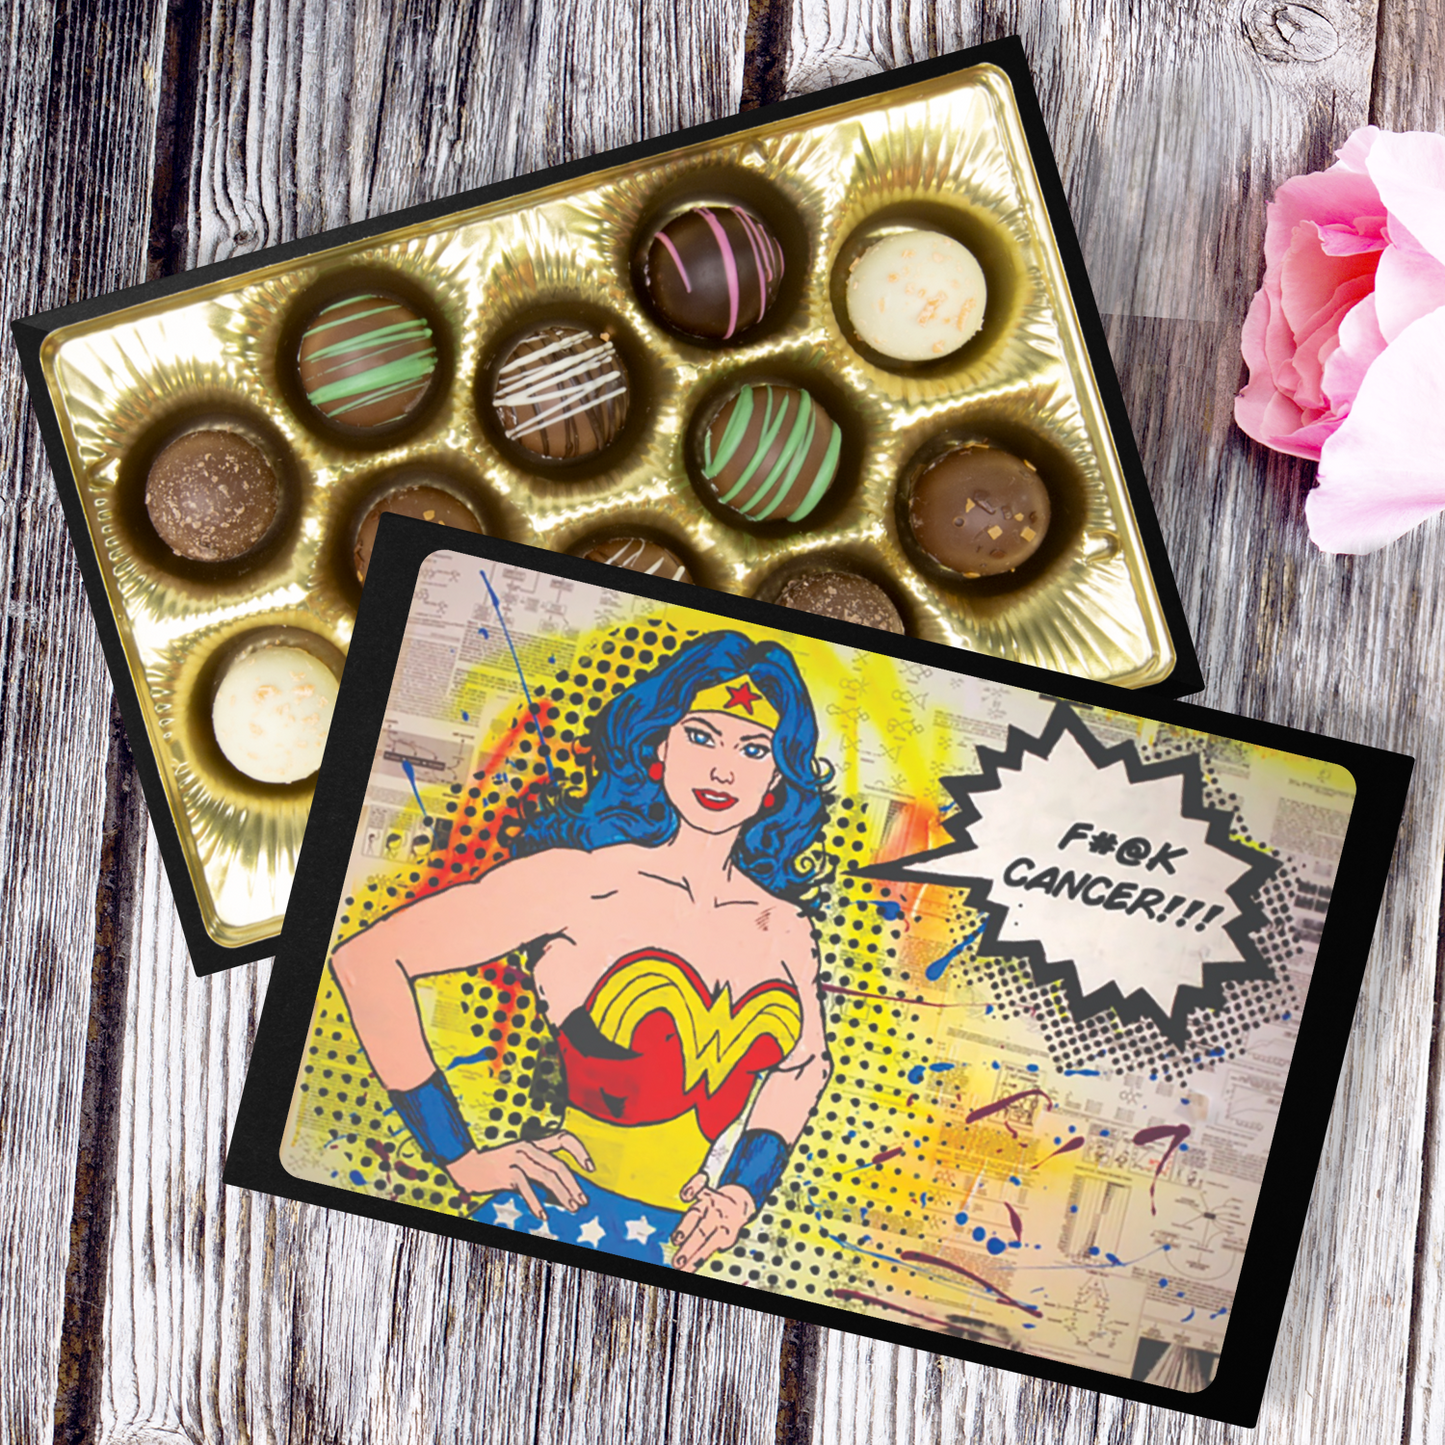 Handmade Chocolate Truffles with "Empowered" Box